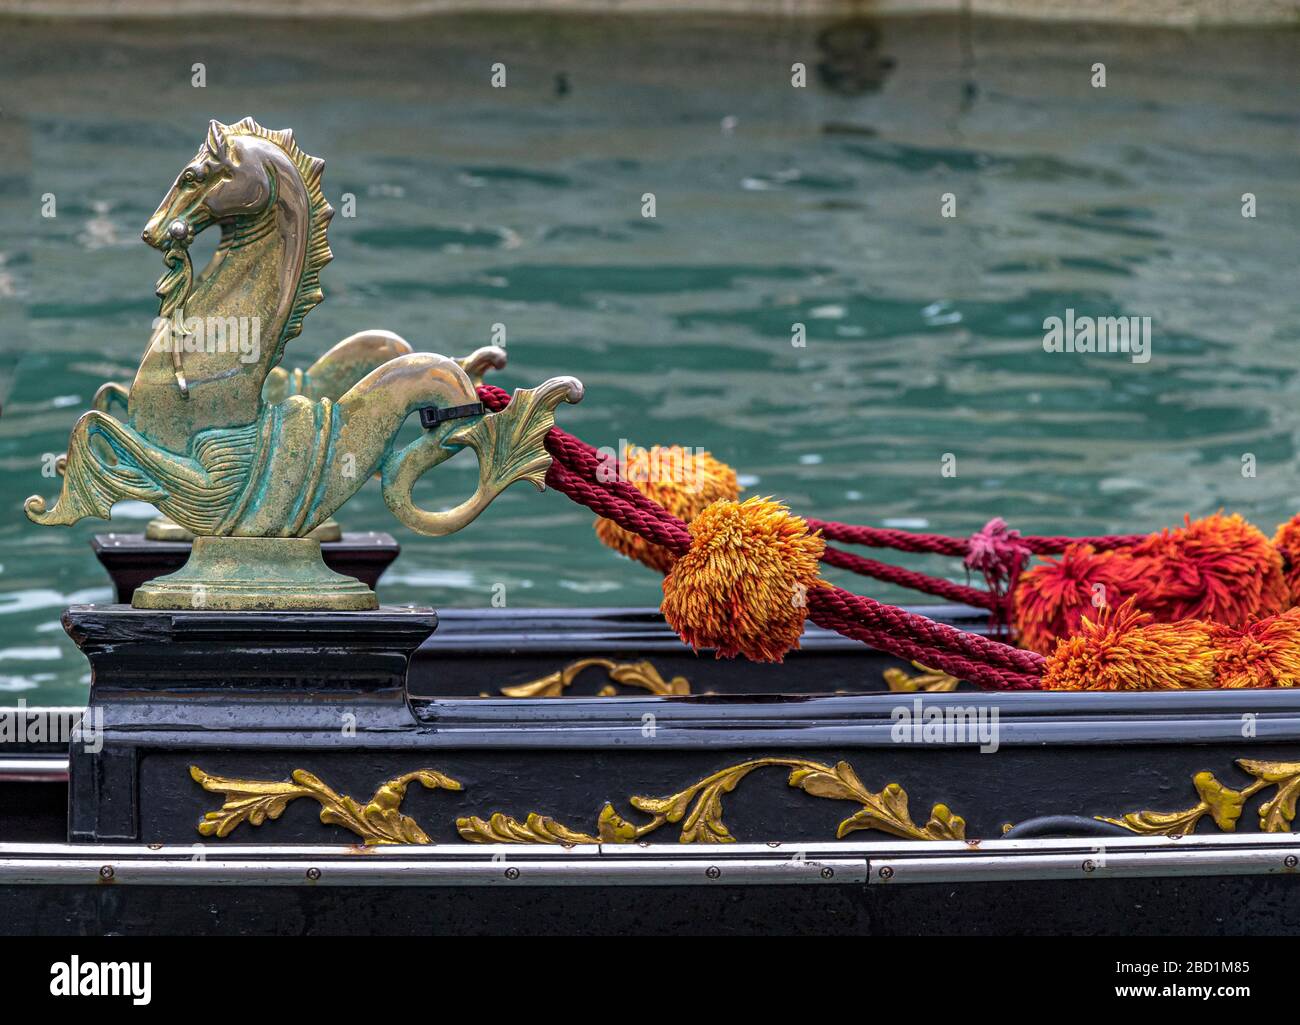 Gros plan sur les ornements dorés d'hippocampe sur le côté d'une télécabine vénitienne Gondolas sur le Grand Canal, Venise, Italie Banque D'Images